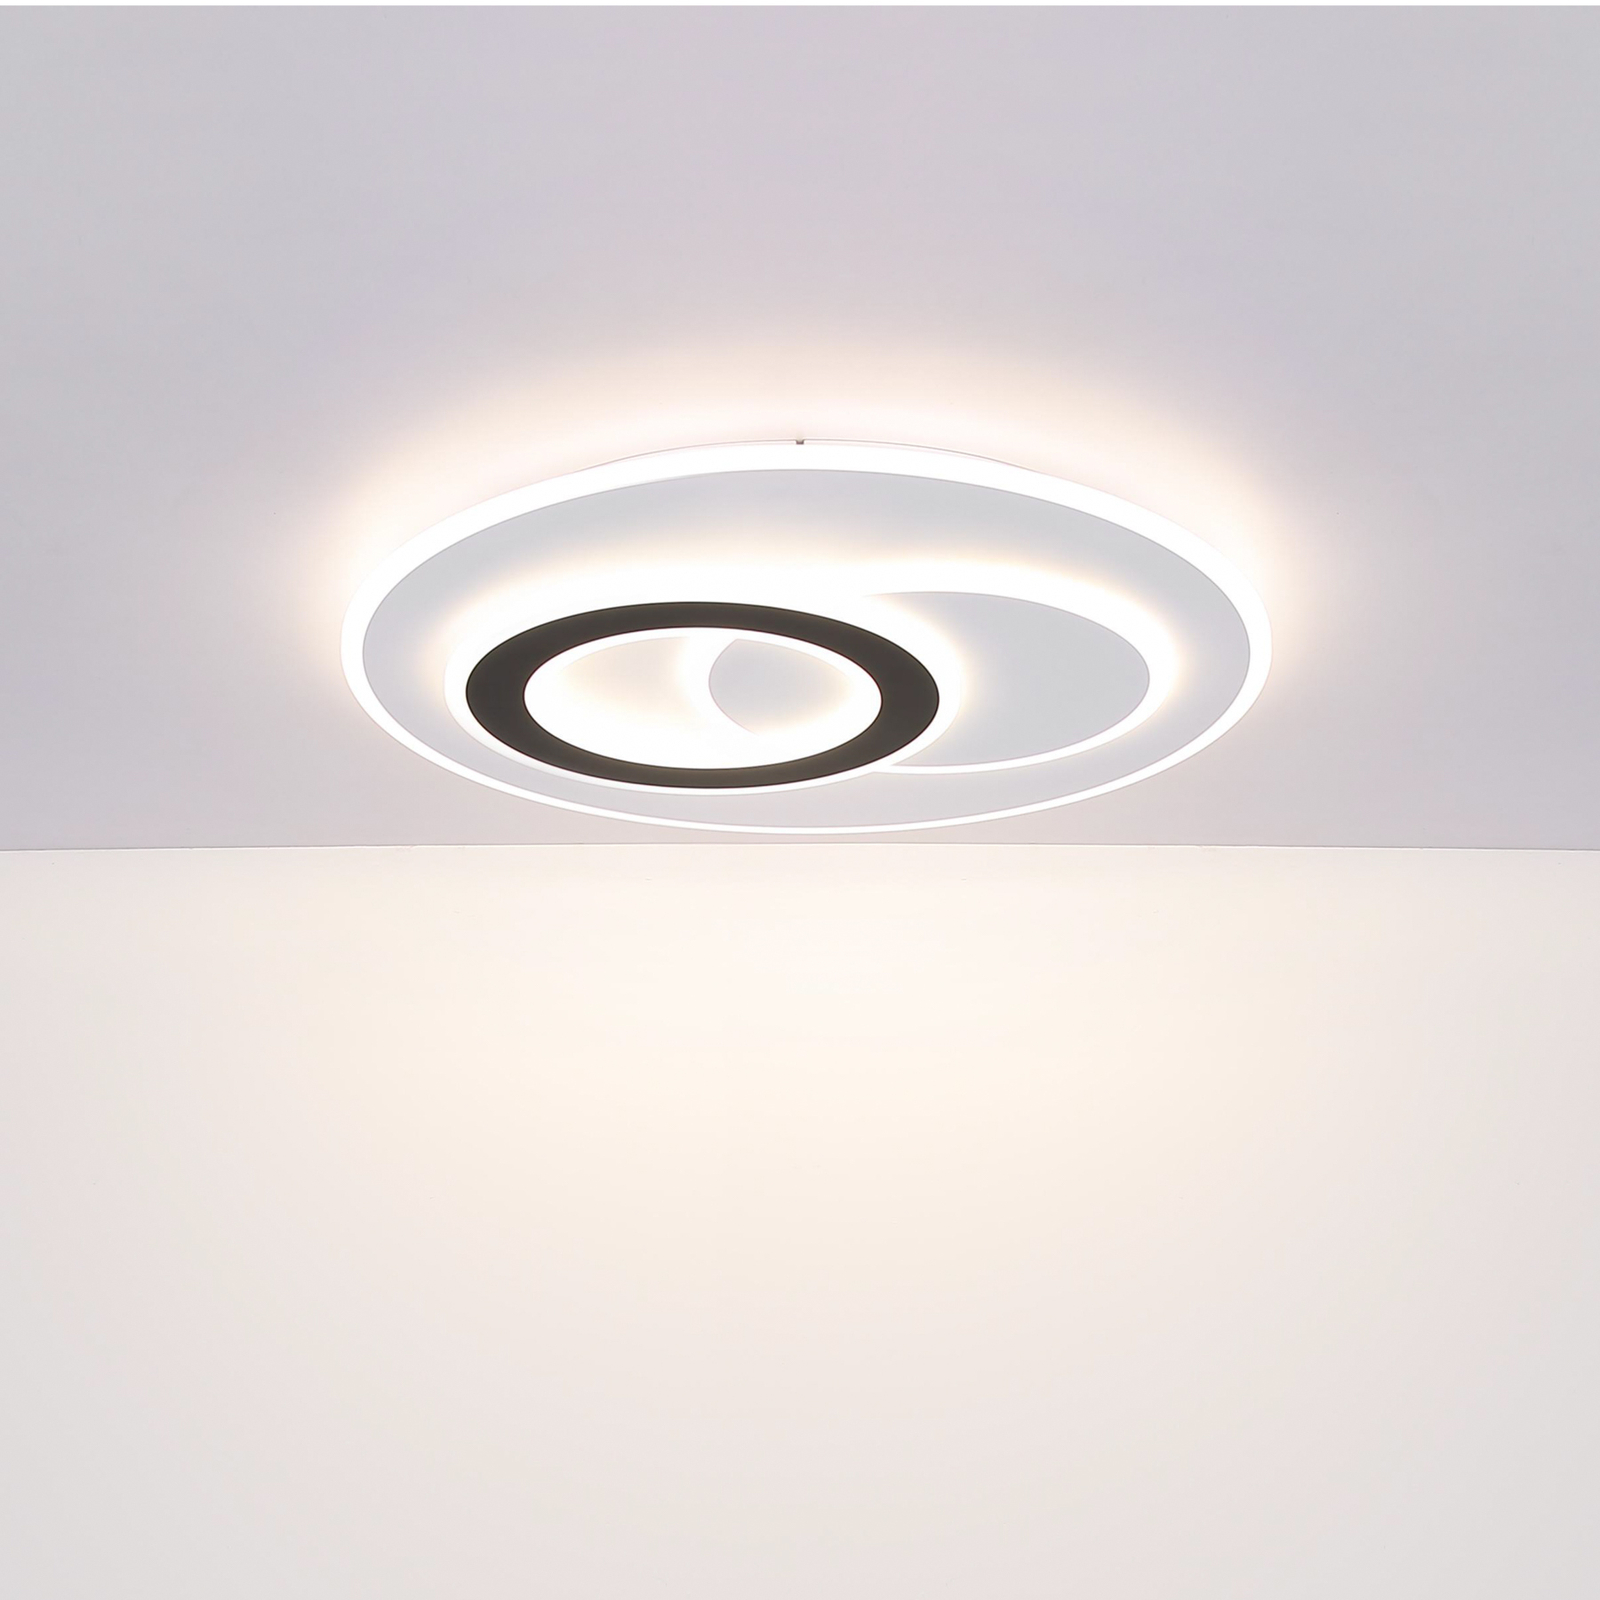 Smart LED stropna svetilka Jacques, bela/črna, Ø 70 cm, CCT